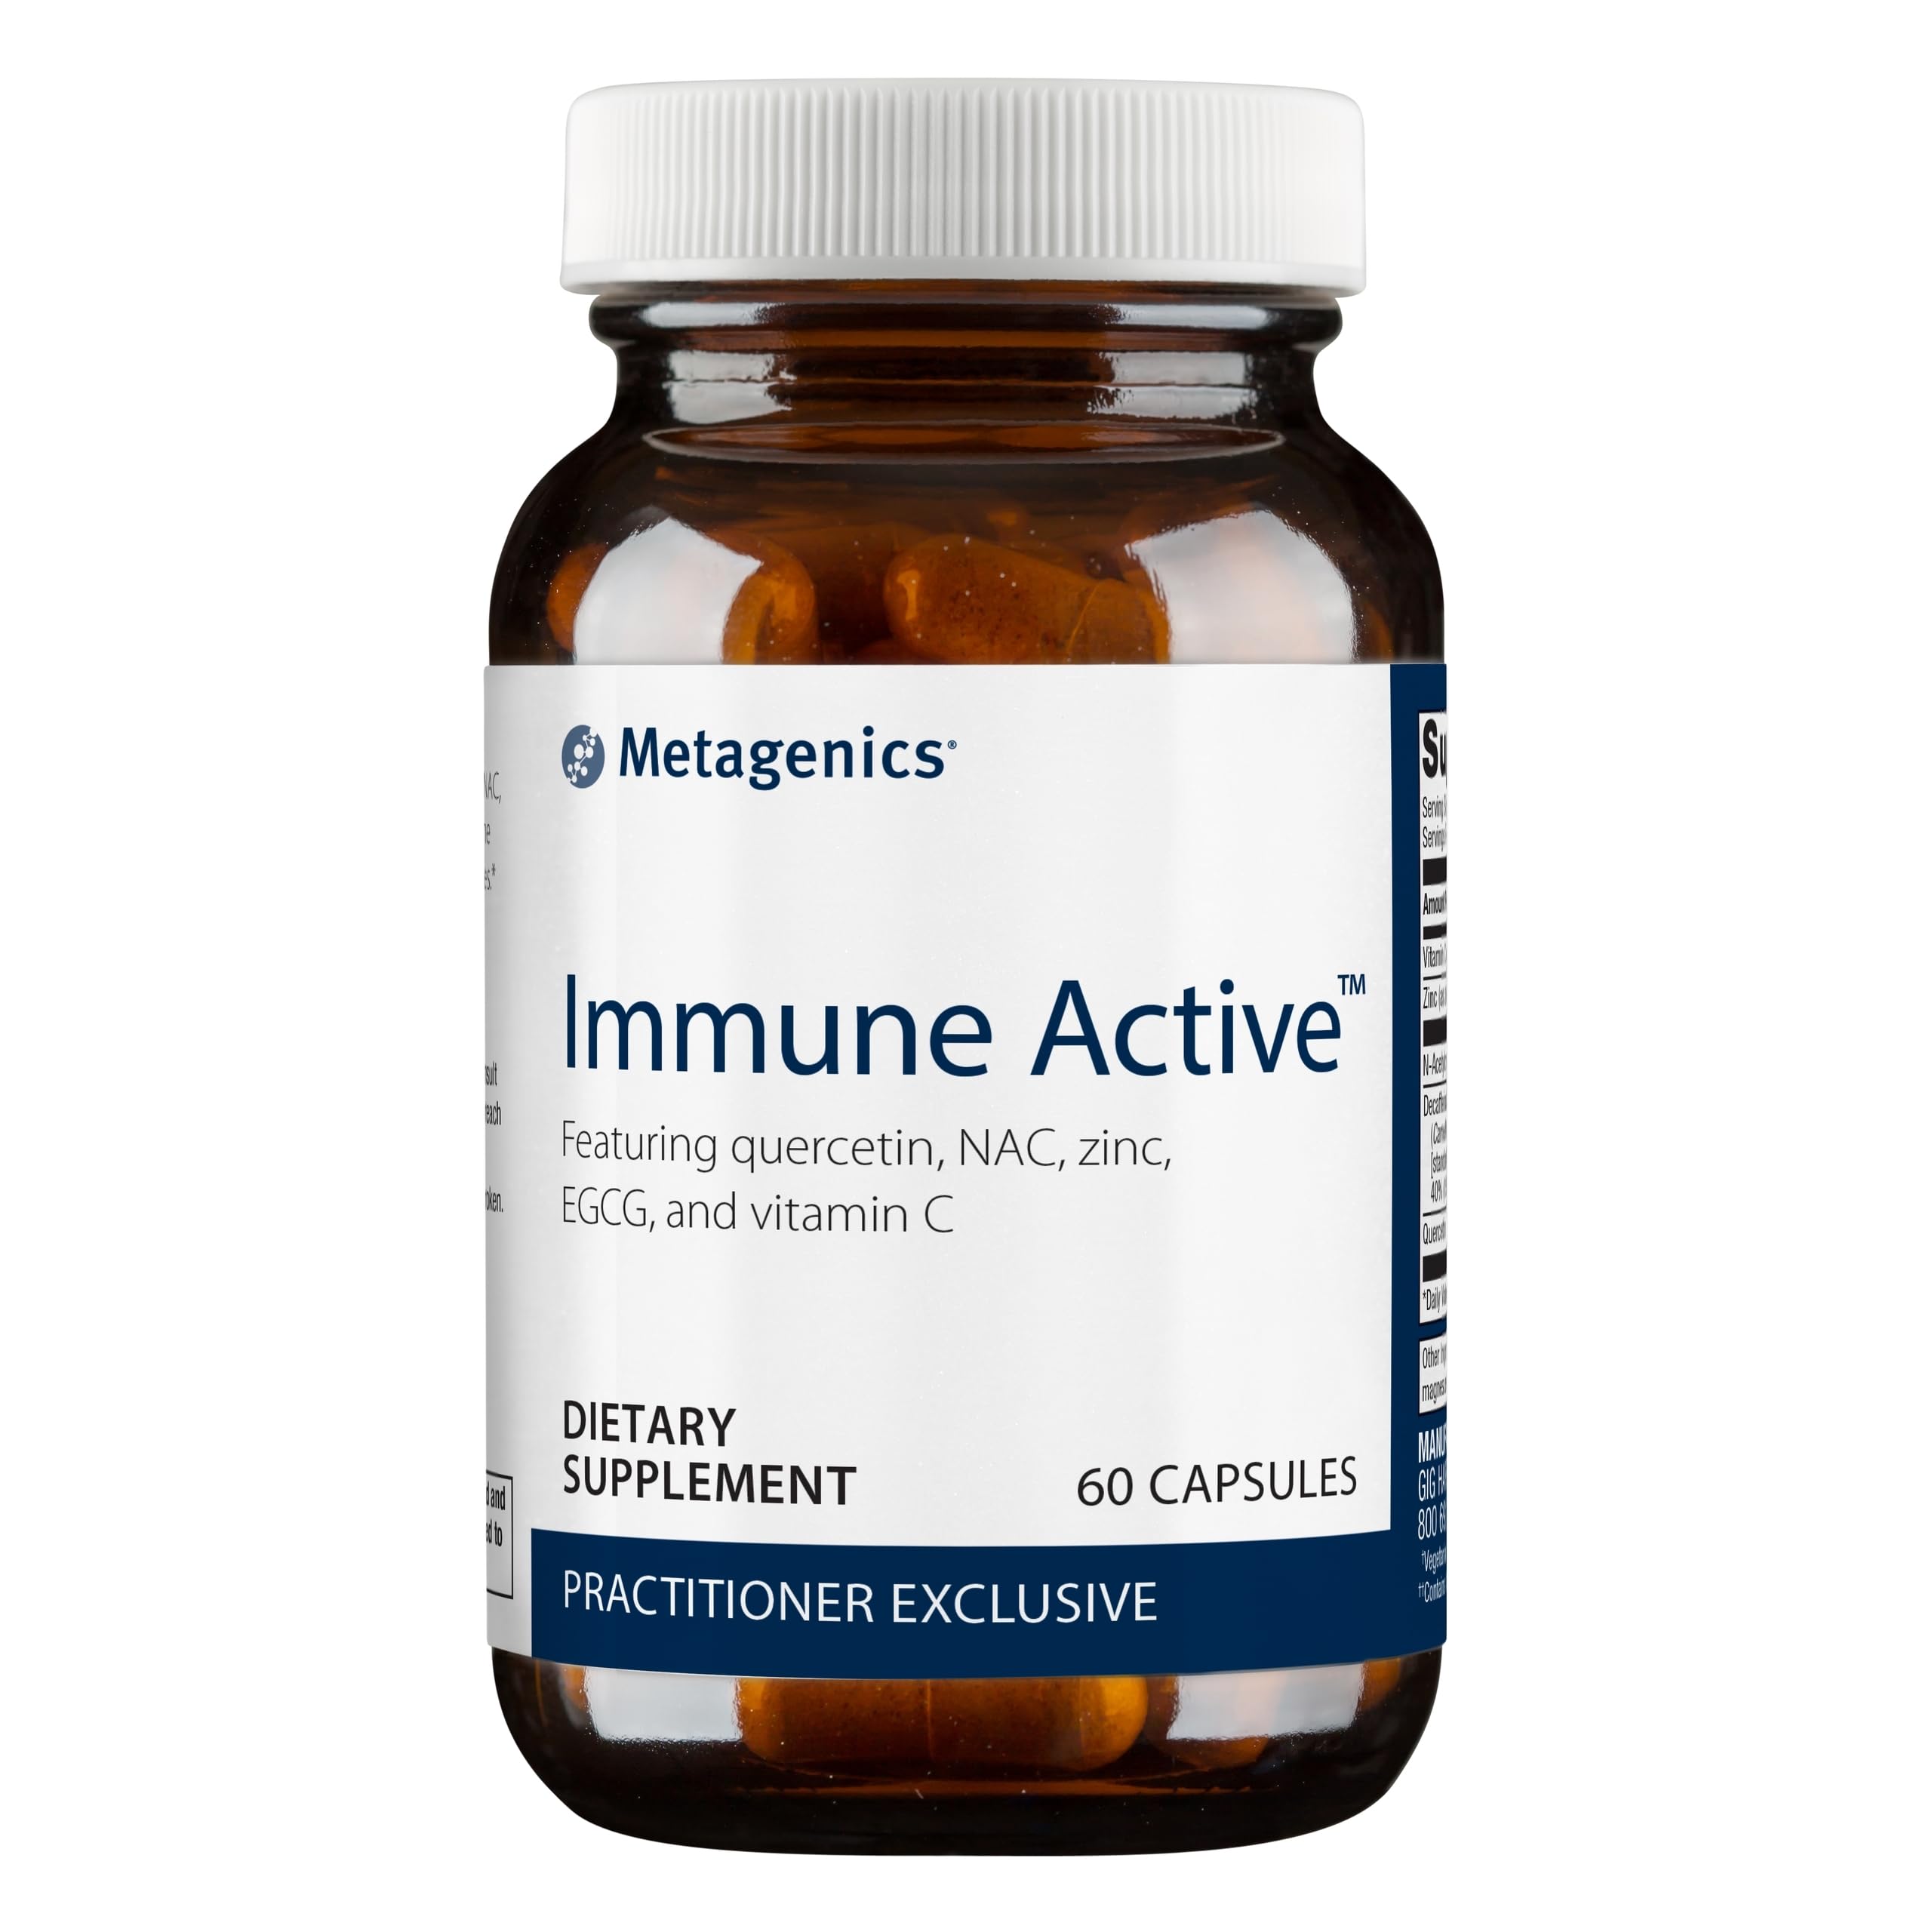 Metagenics Immune Active Vitamin C & Zinc for Immune Health - 60 Capsules